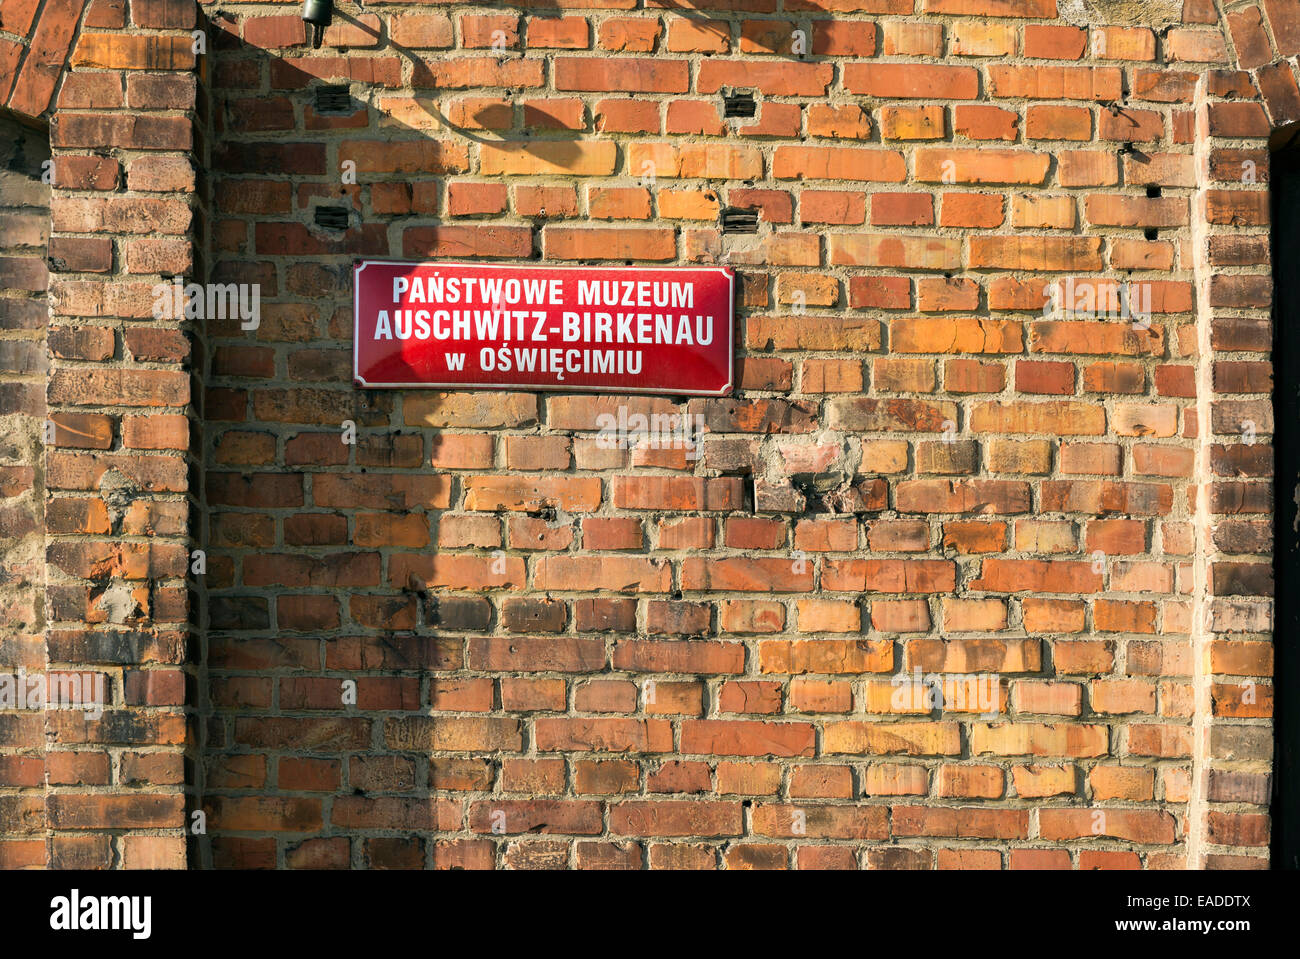 AUSCHWITZ, Polen - 25. Oktober 2014: Schild in öffentlichen Auschwitz-Birkenau Museum in Oswiecim, Polen Stockfoto